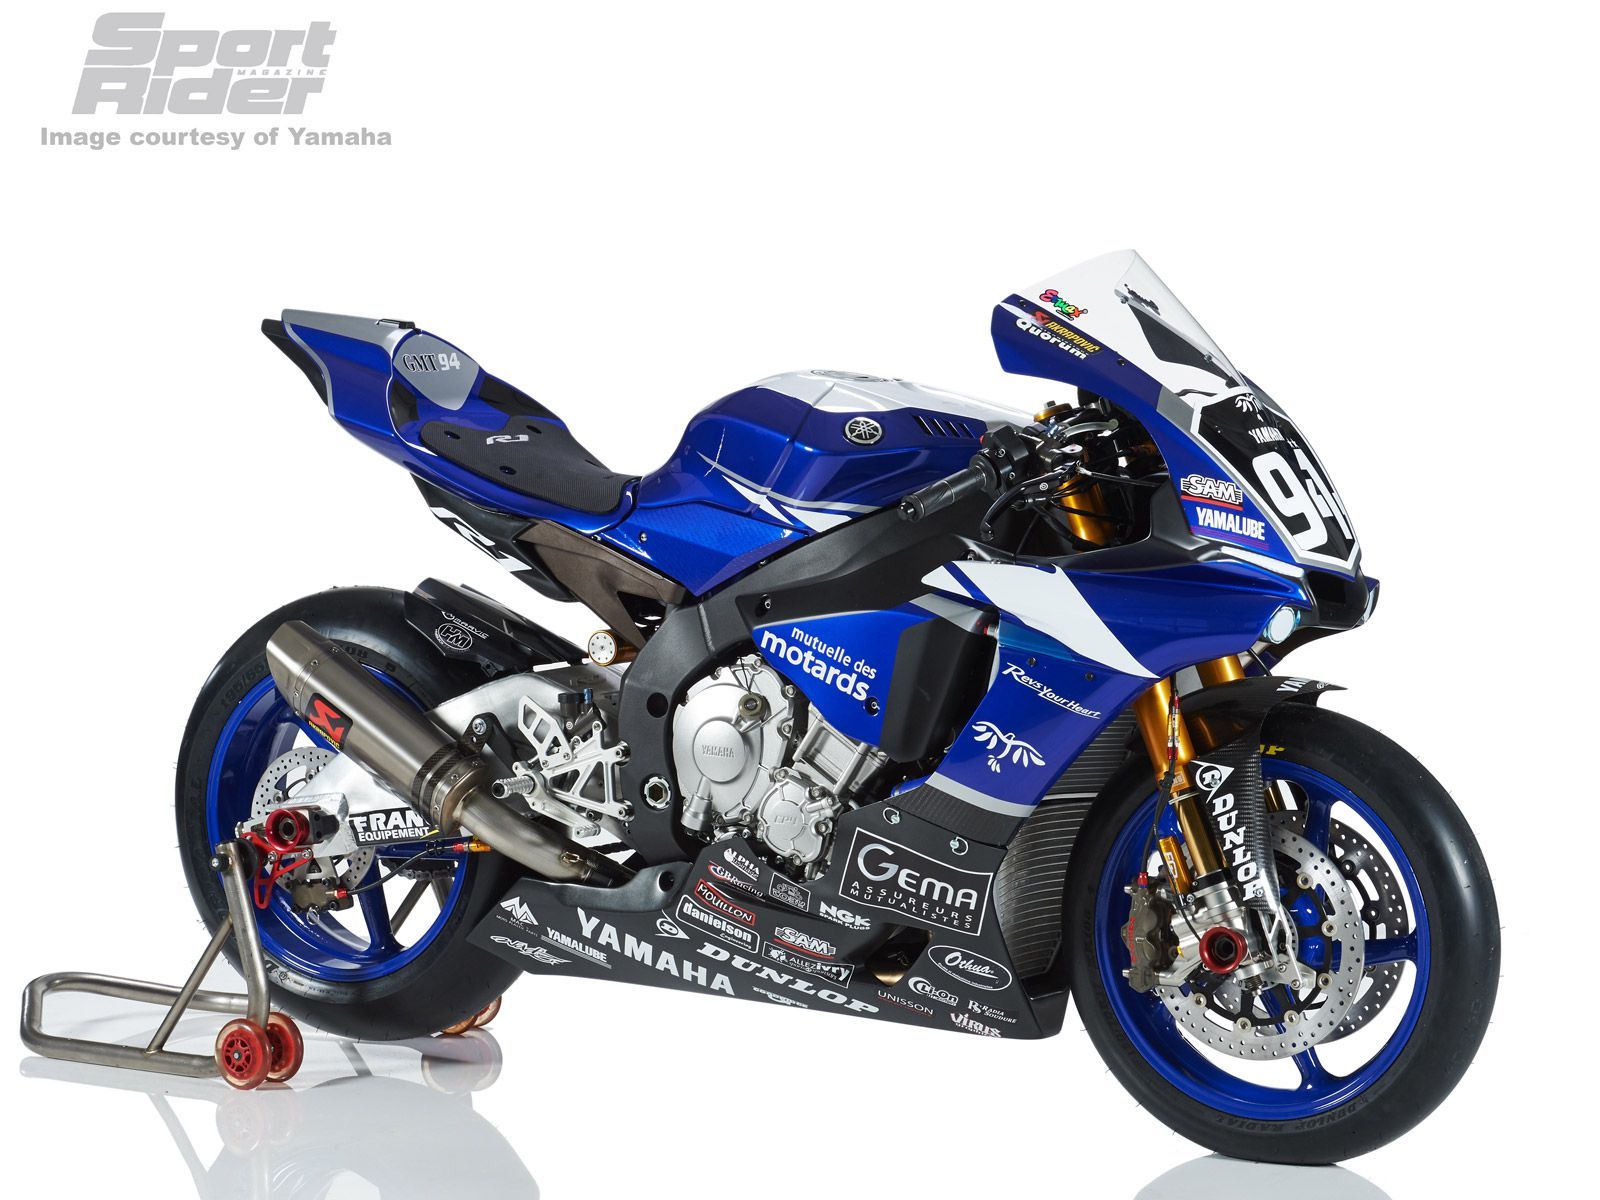 Image Gallery: 2015 Yamaha YZF R1 Race Machinery